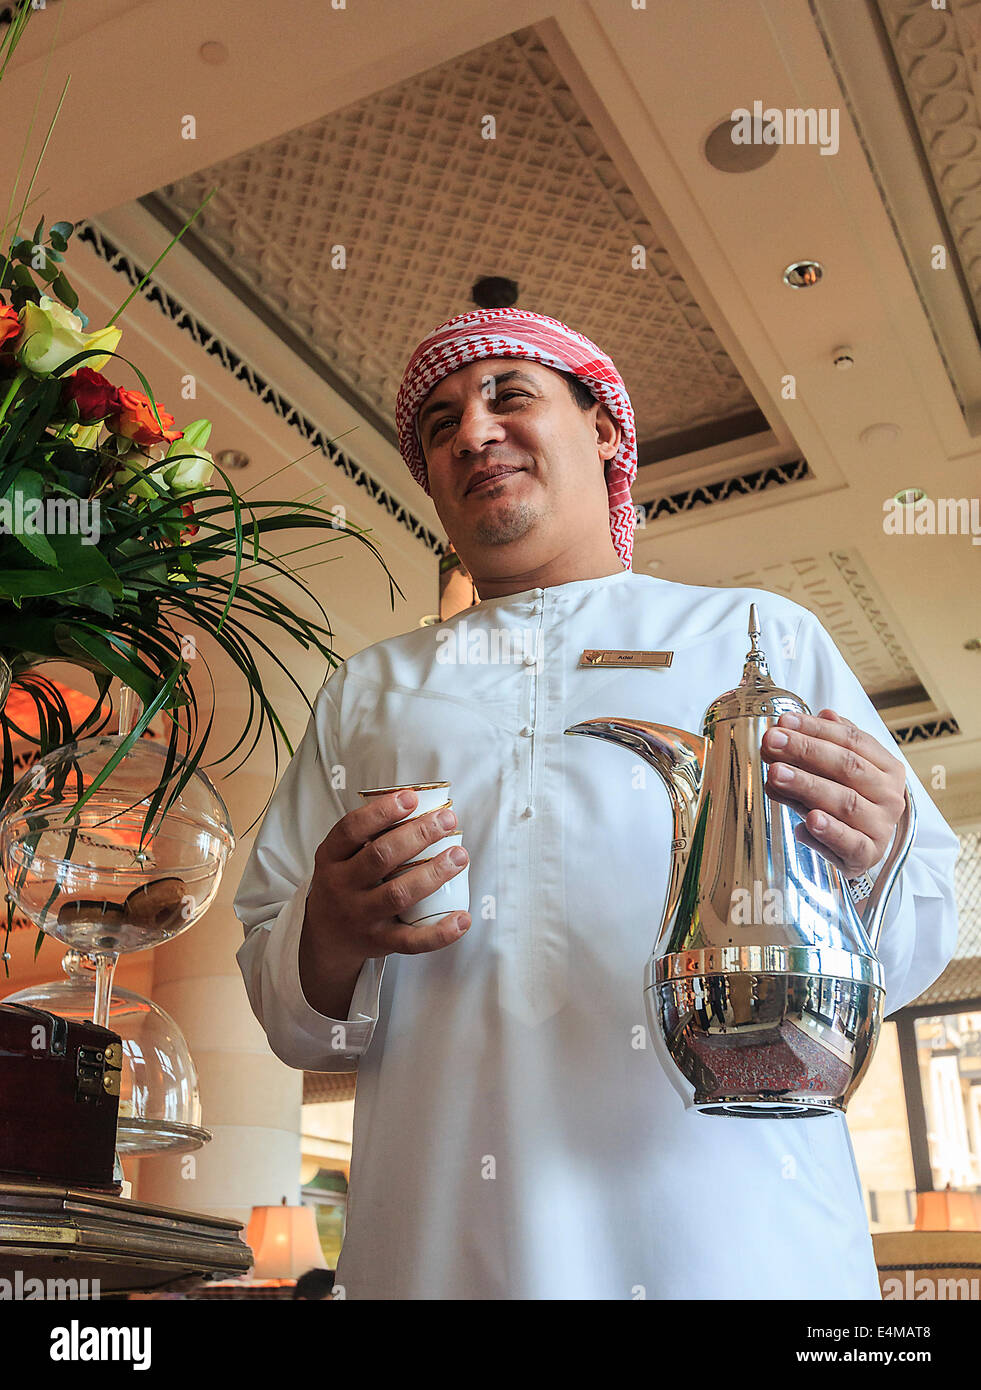 Les clients entrant dans le hall de l'hôtel Mina a'Salam Madinat Jumeirah, sont accueillis avec du café arabe. Dubaï, Émirats arabes unis. Banque D'Images